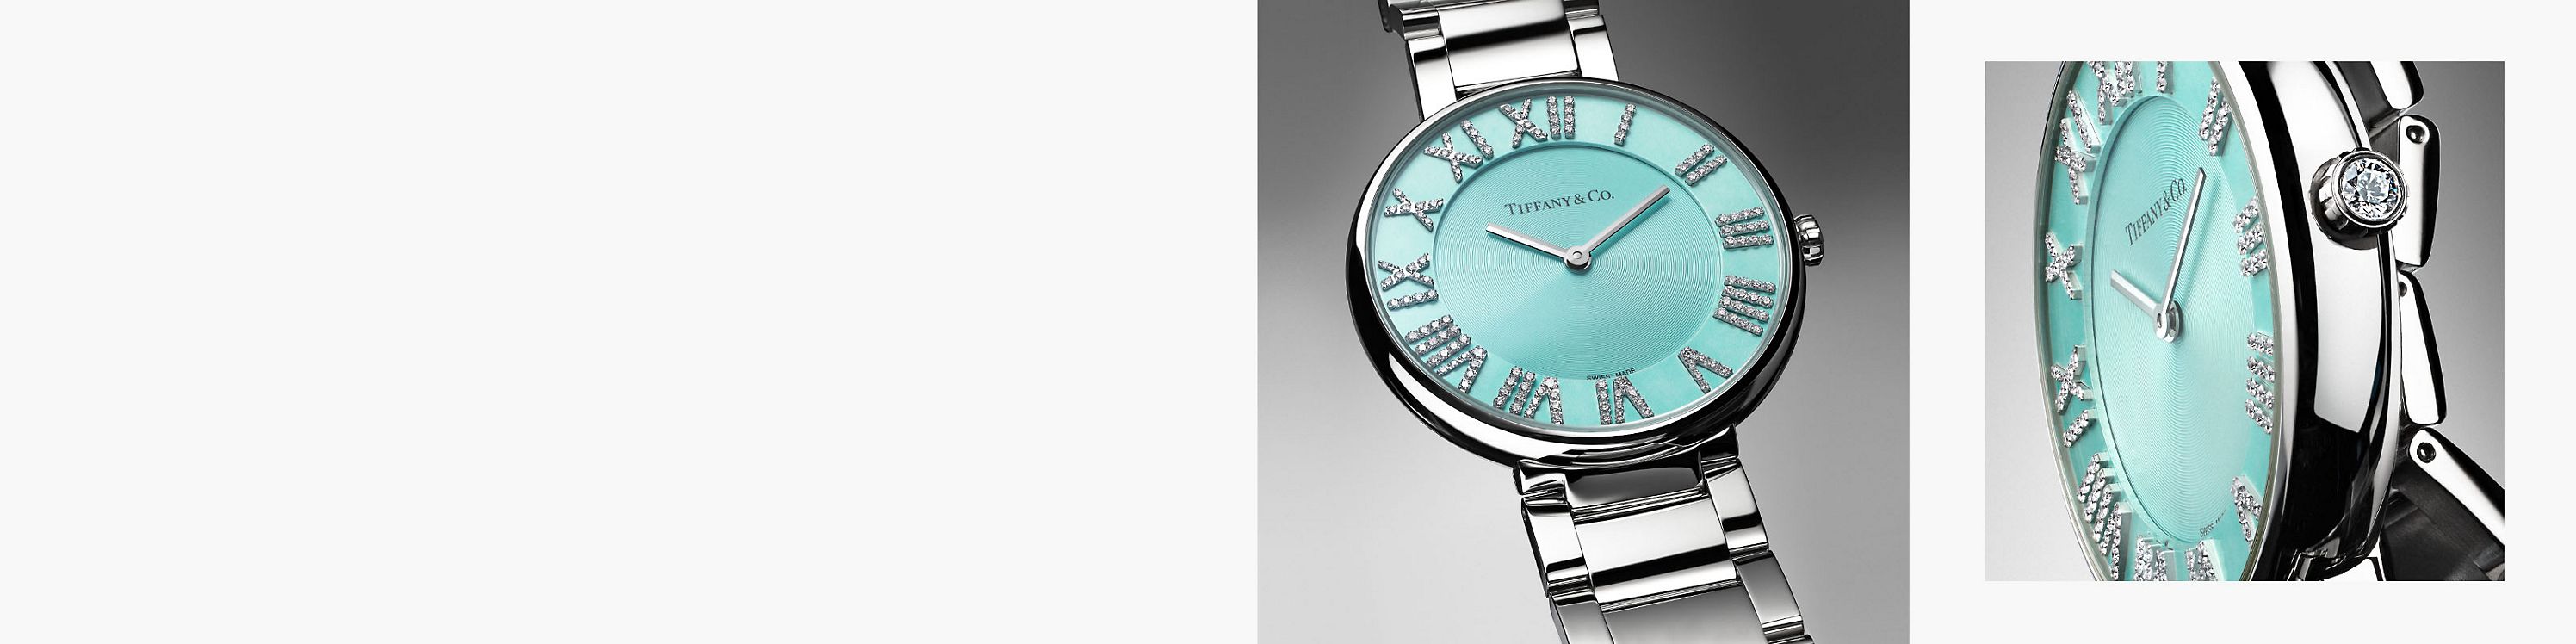 Découvrez les montres Atlas® Tiffany & Co.